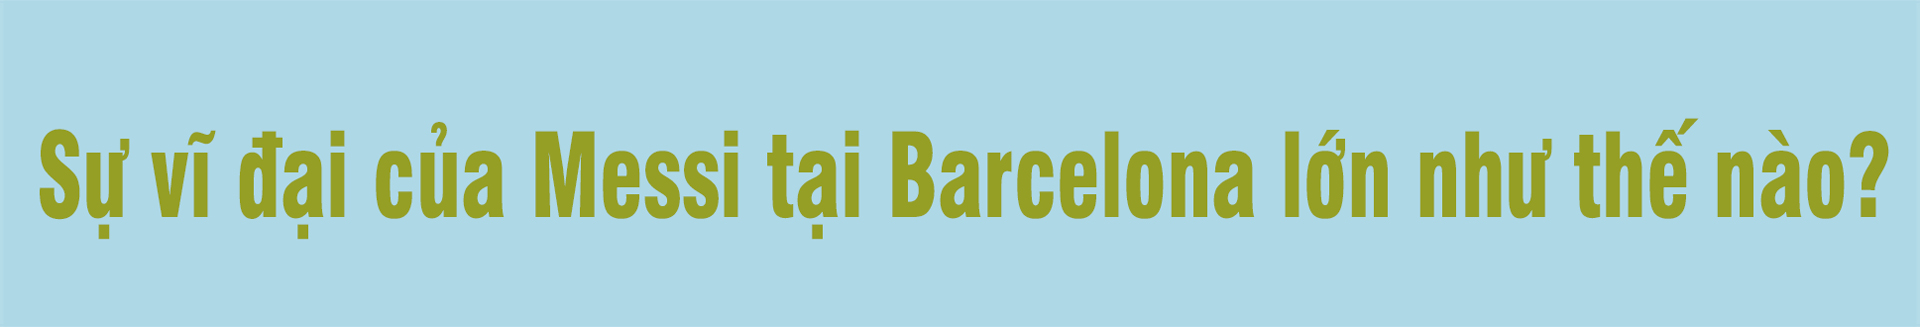 Messi rời Barcelona: Sự sụp đổ của một triều đại và miền đất mới ngập tiền - 6